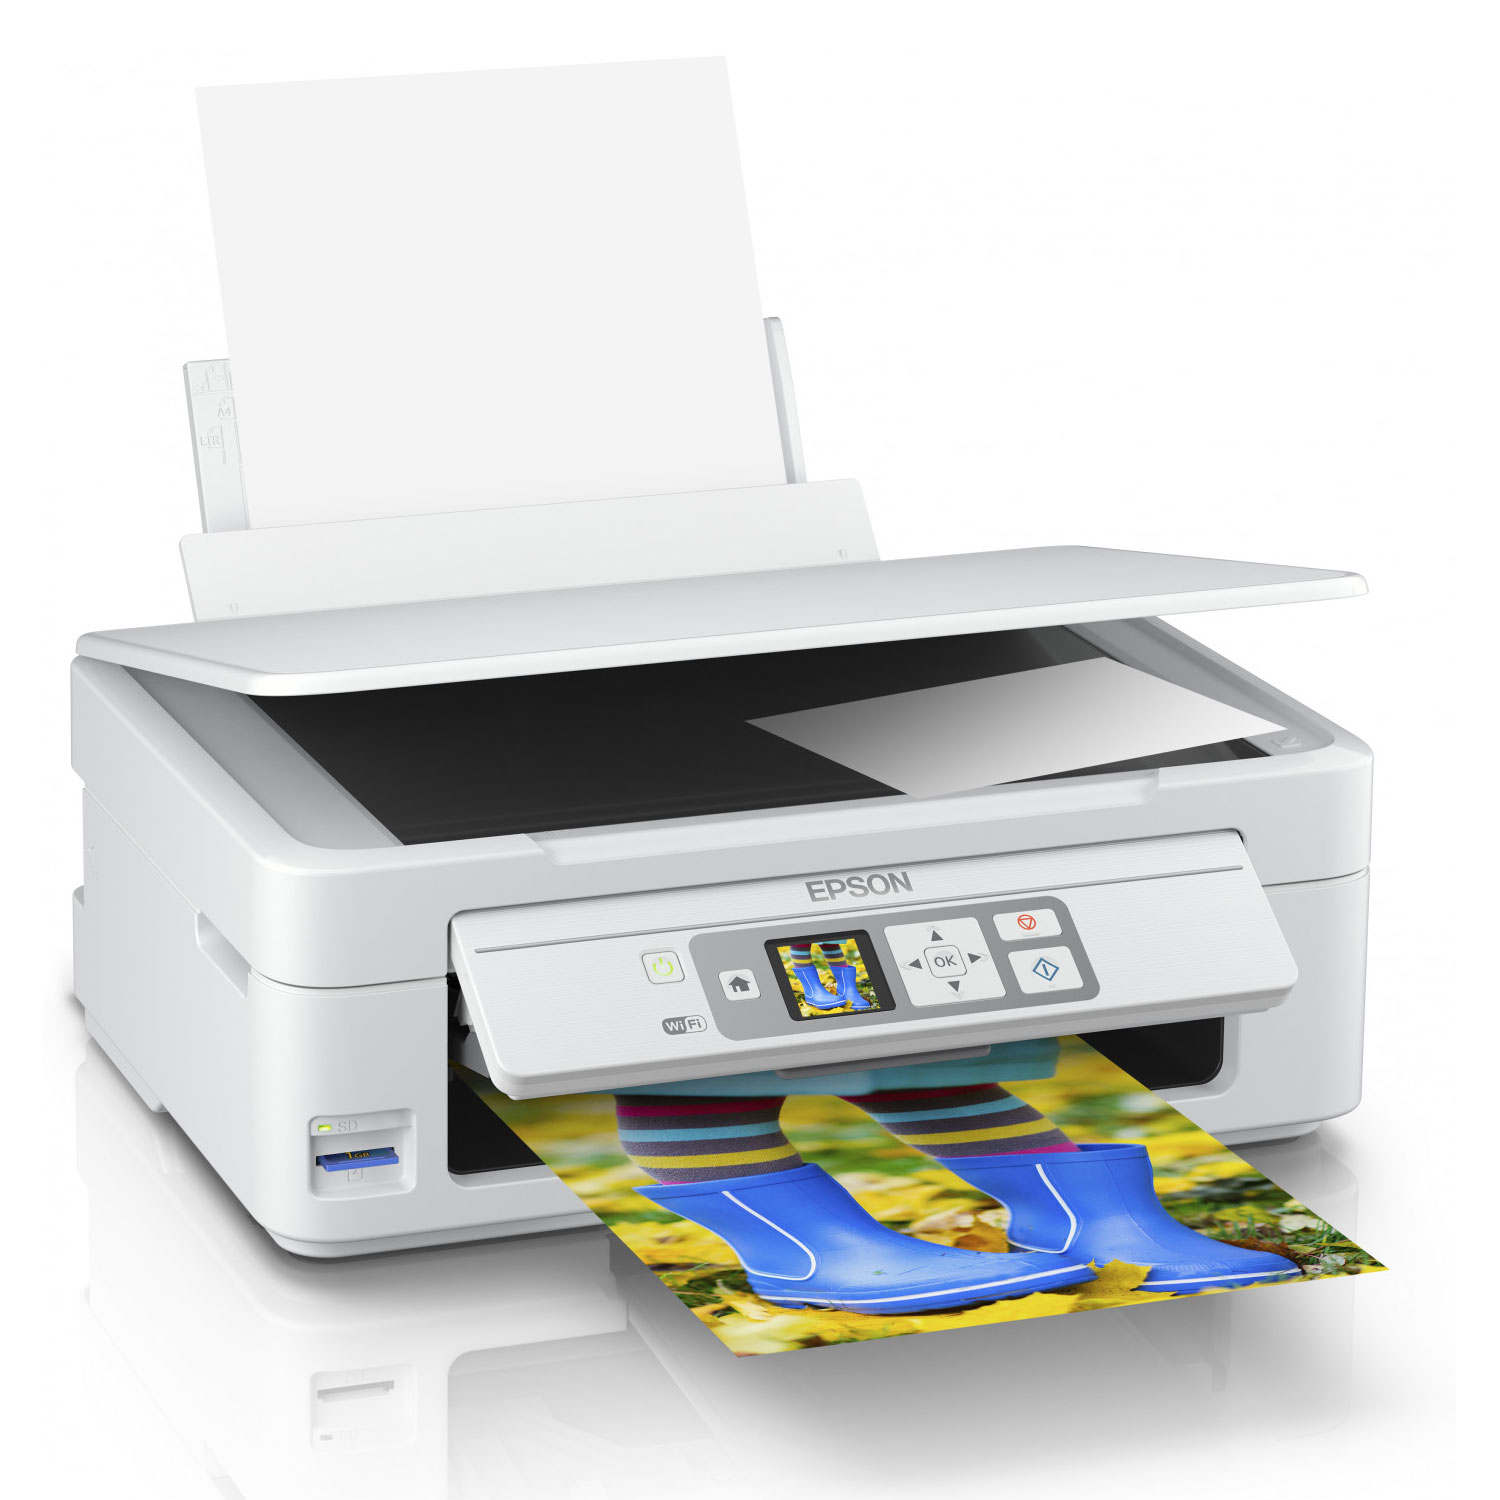 imprimante epson xp 245 - Votre recherche imprimante epson xp 245